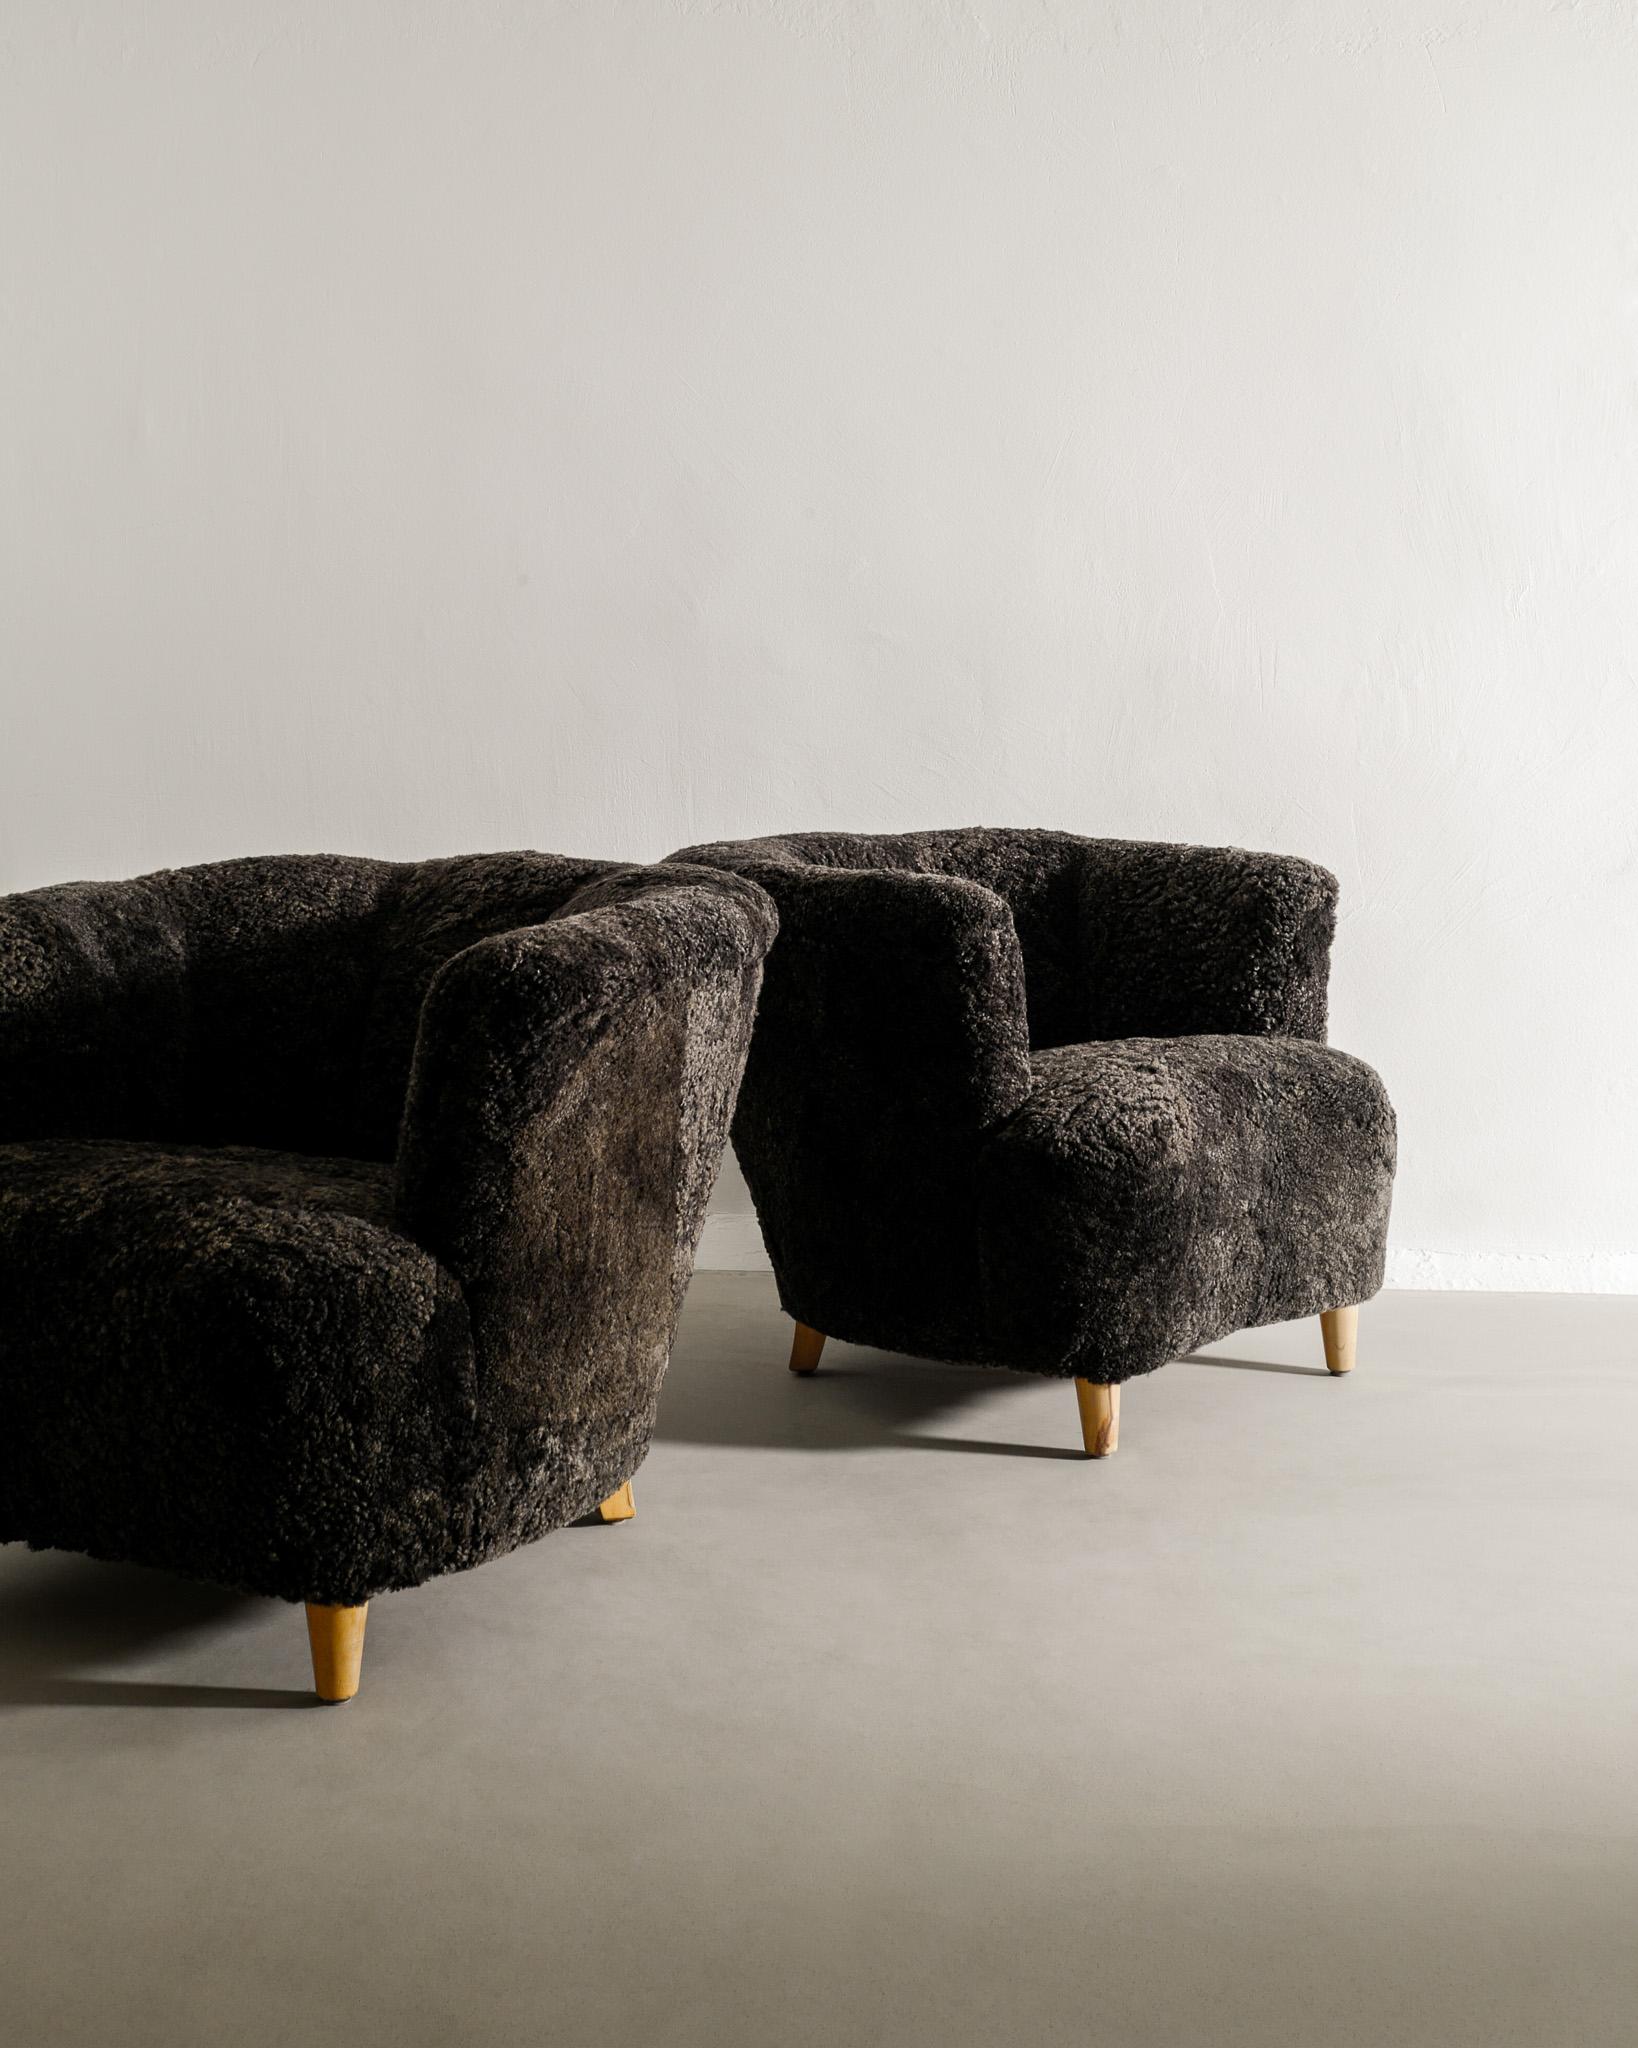 Paar geschwungene schwedische moderne Sessel mit Armlehne aus grauem Schafsleder, hergestellt 1940er Jahre (Skandinavische Moderne)